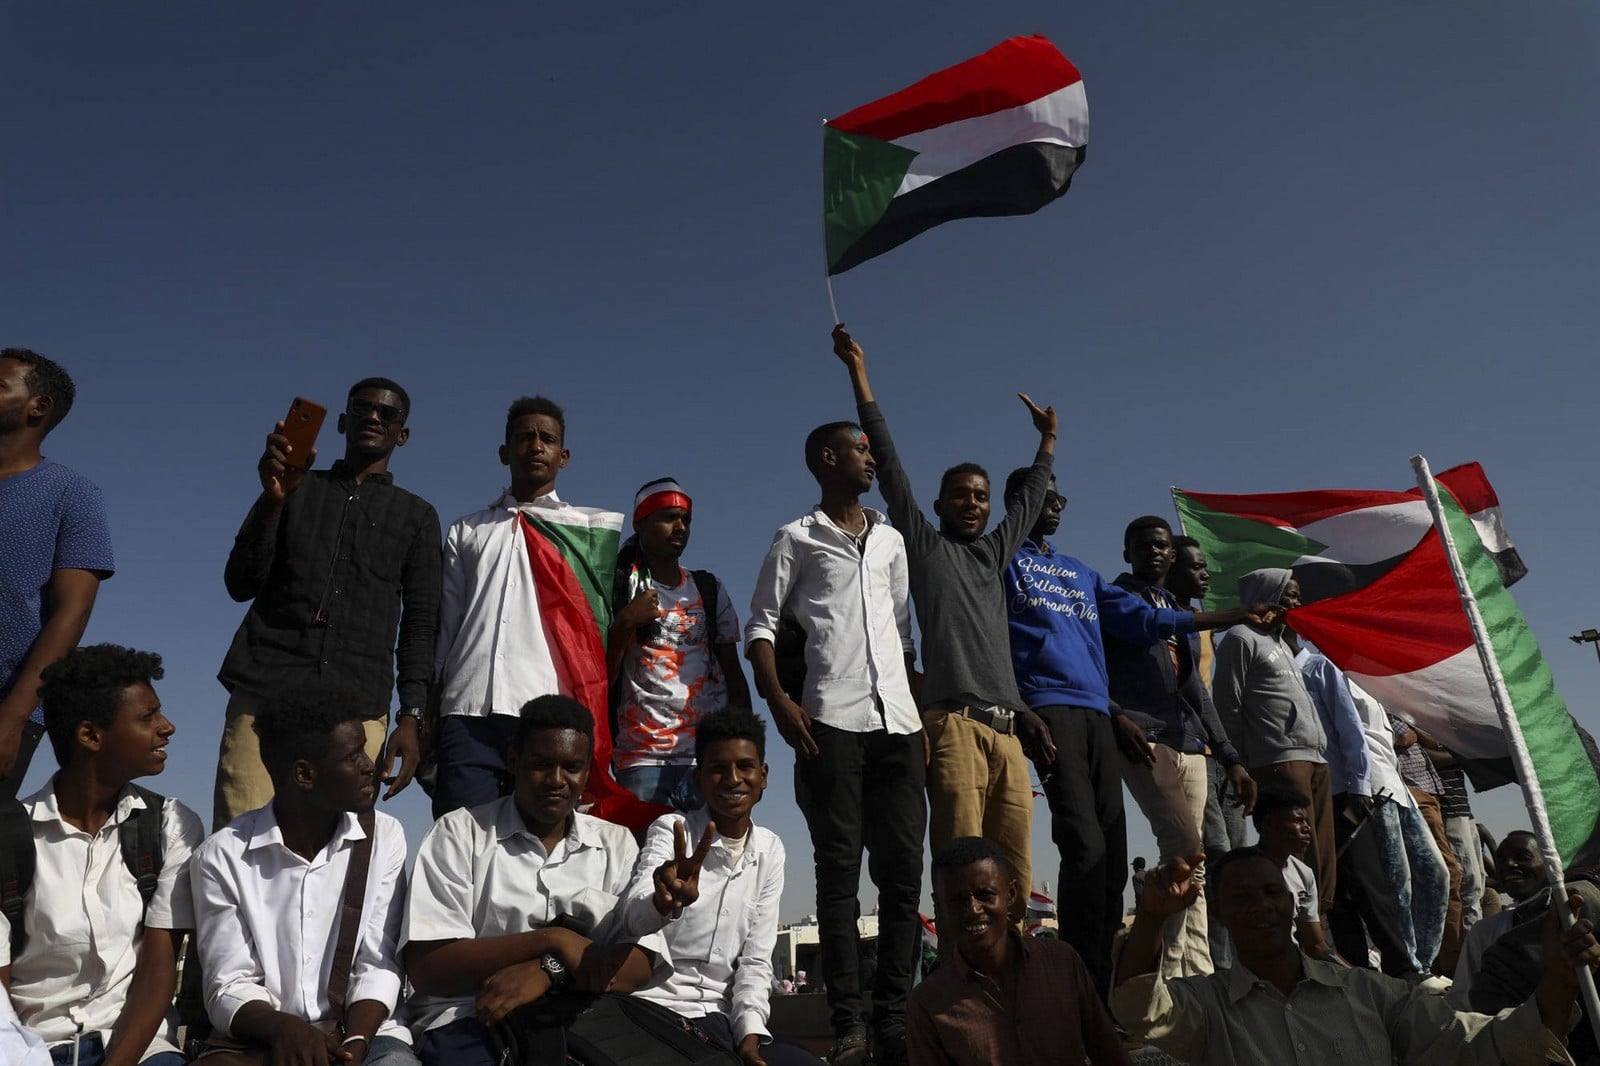 Rassemblement pour célébrer le premier anniversaire de l'éviction de l'ancien président Omar al-Bashir, à Khartoum, le 19 novembre 2019,
Auteurs  : /AP/SIPA,
Numéro de reportage  : AP22410239_000002.